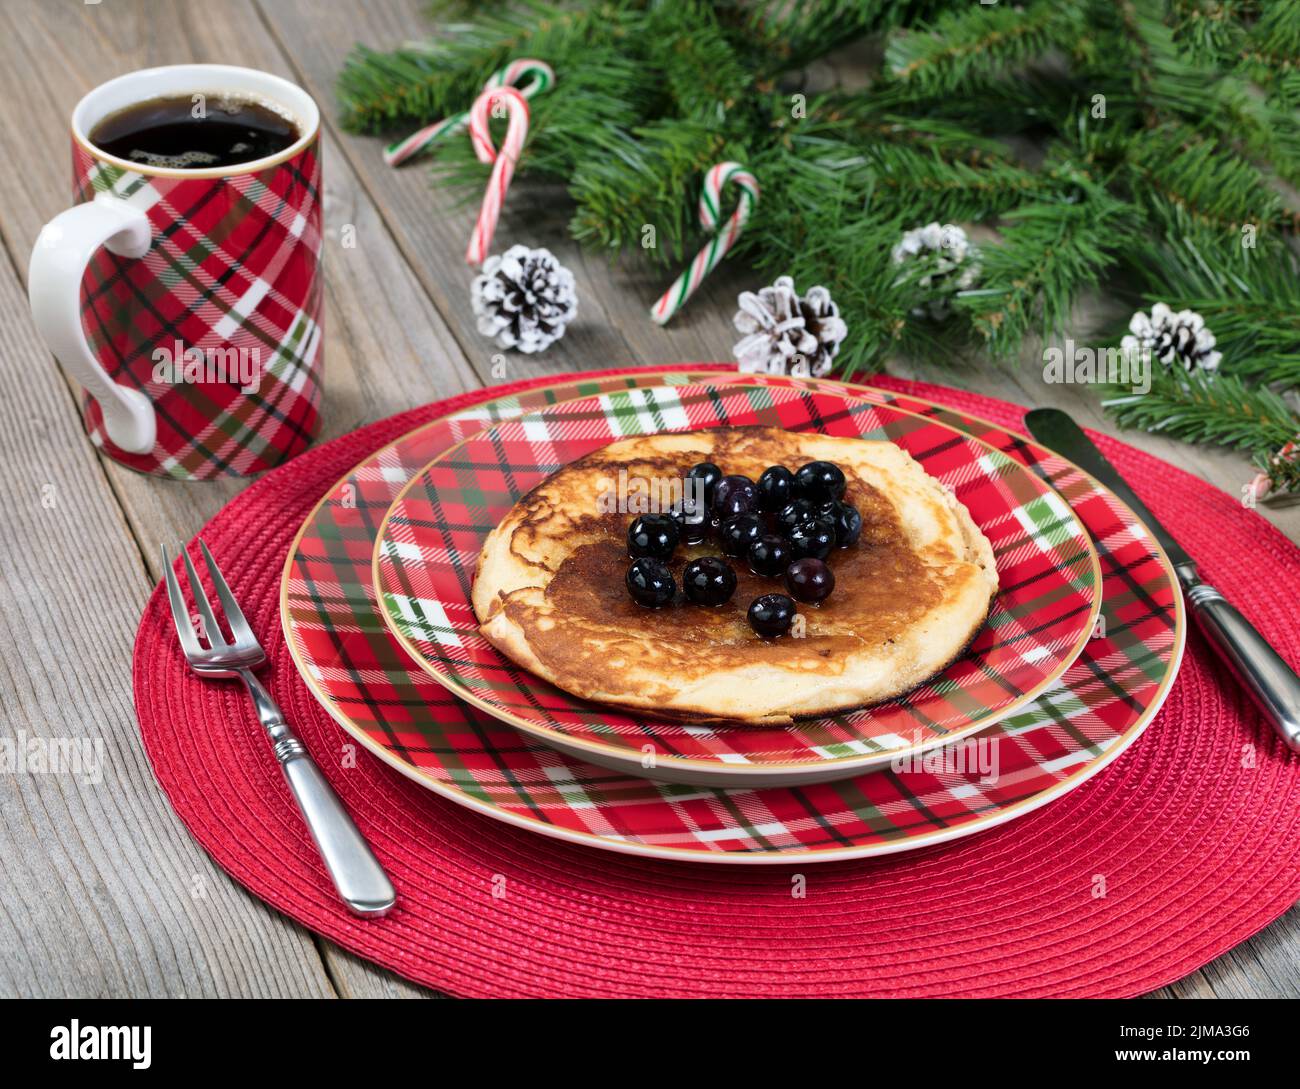 Desayuno de crepes para el día de Navidad con ramas de hoja perenne sobre rústicas tablas de madera Foto de stock